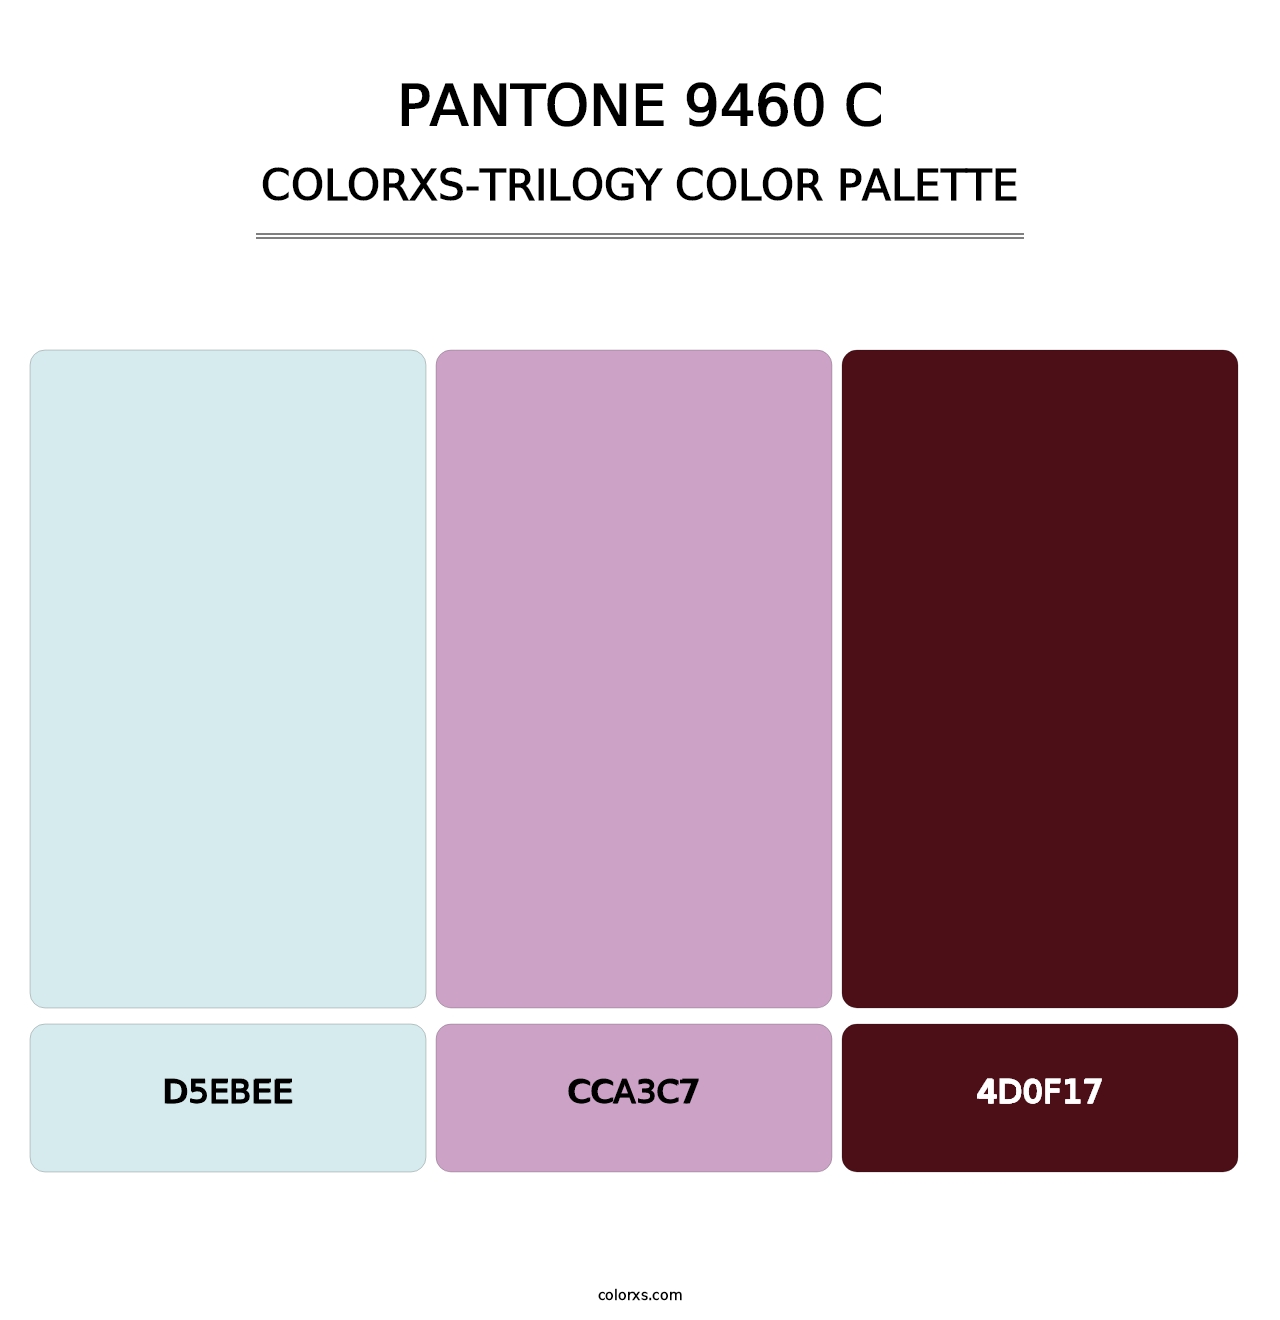 PANTONE 9460 C - Colorxs Trilogy Palette